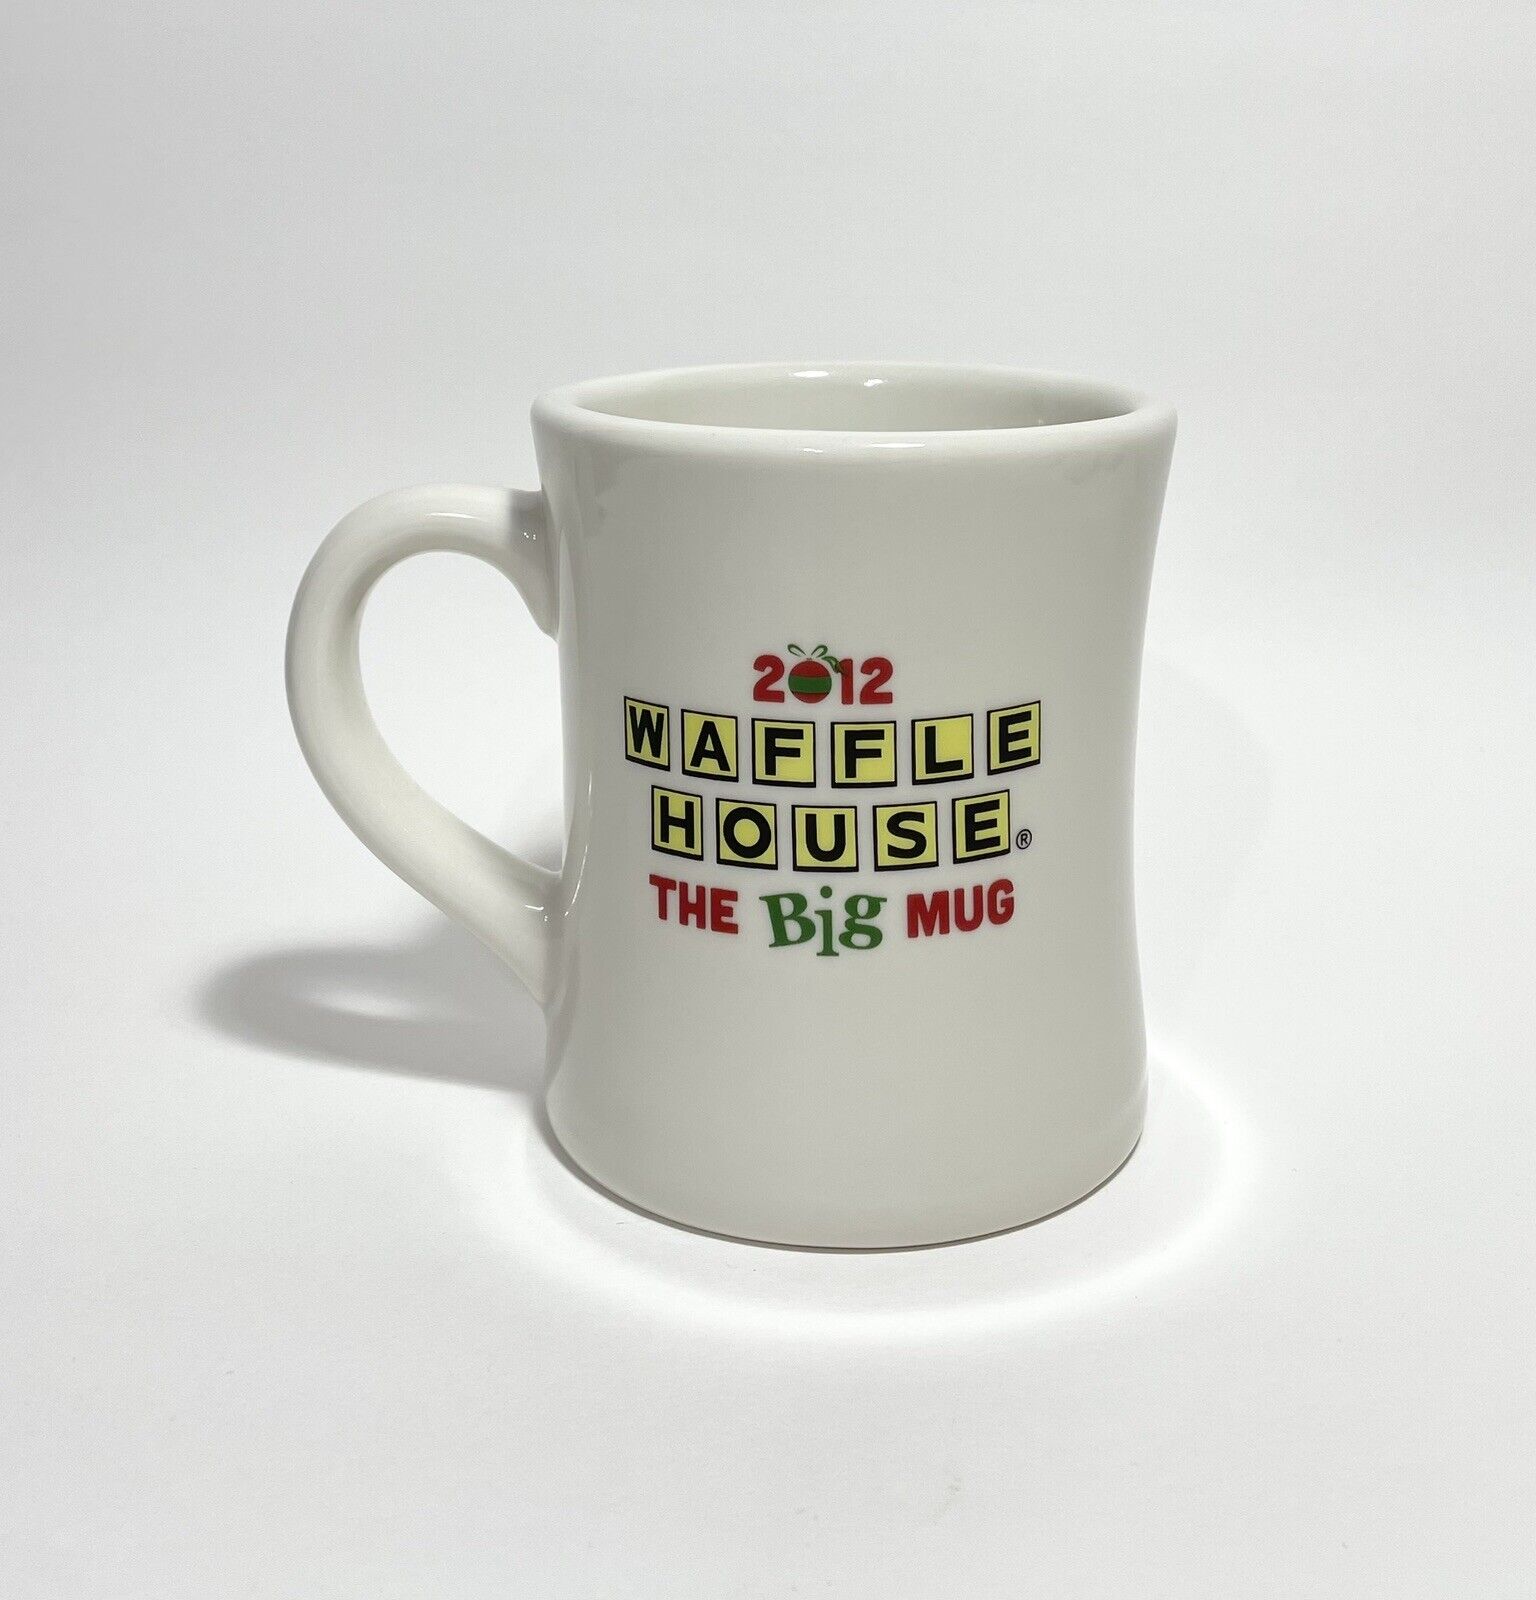 Waffle House The Big Mug Christmas Coffee Cup 2012 Tuxton Holiday Collectible